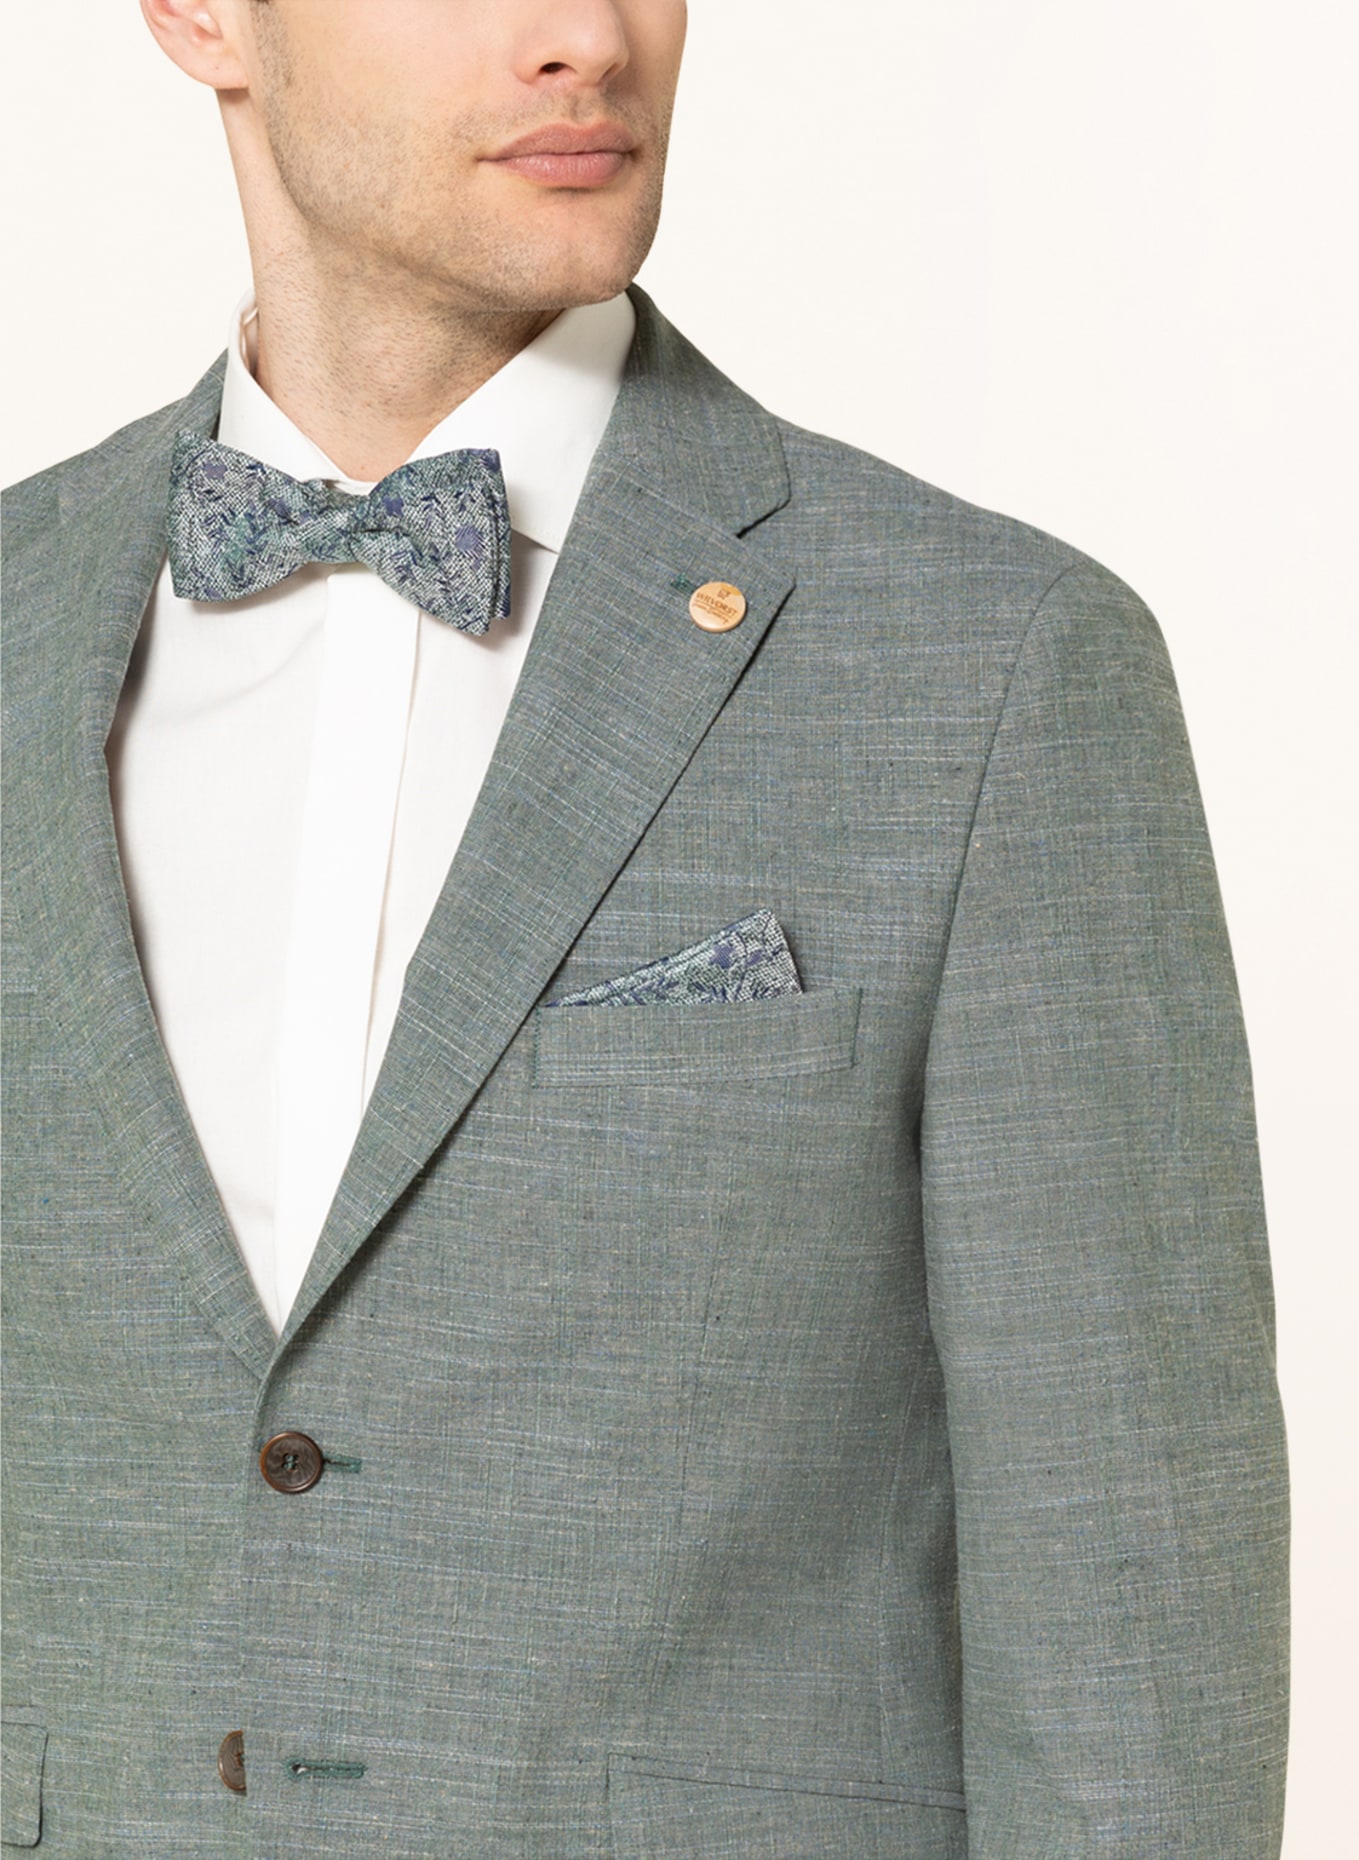 WILVORST Suit jacket extra slim fit, Color: 044 uni grün (Image 5)